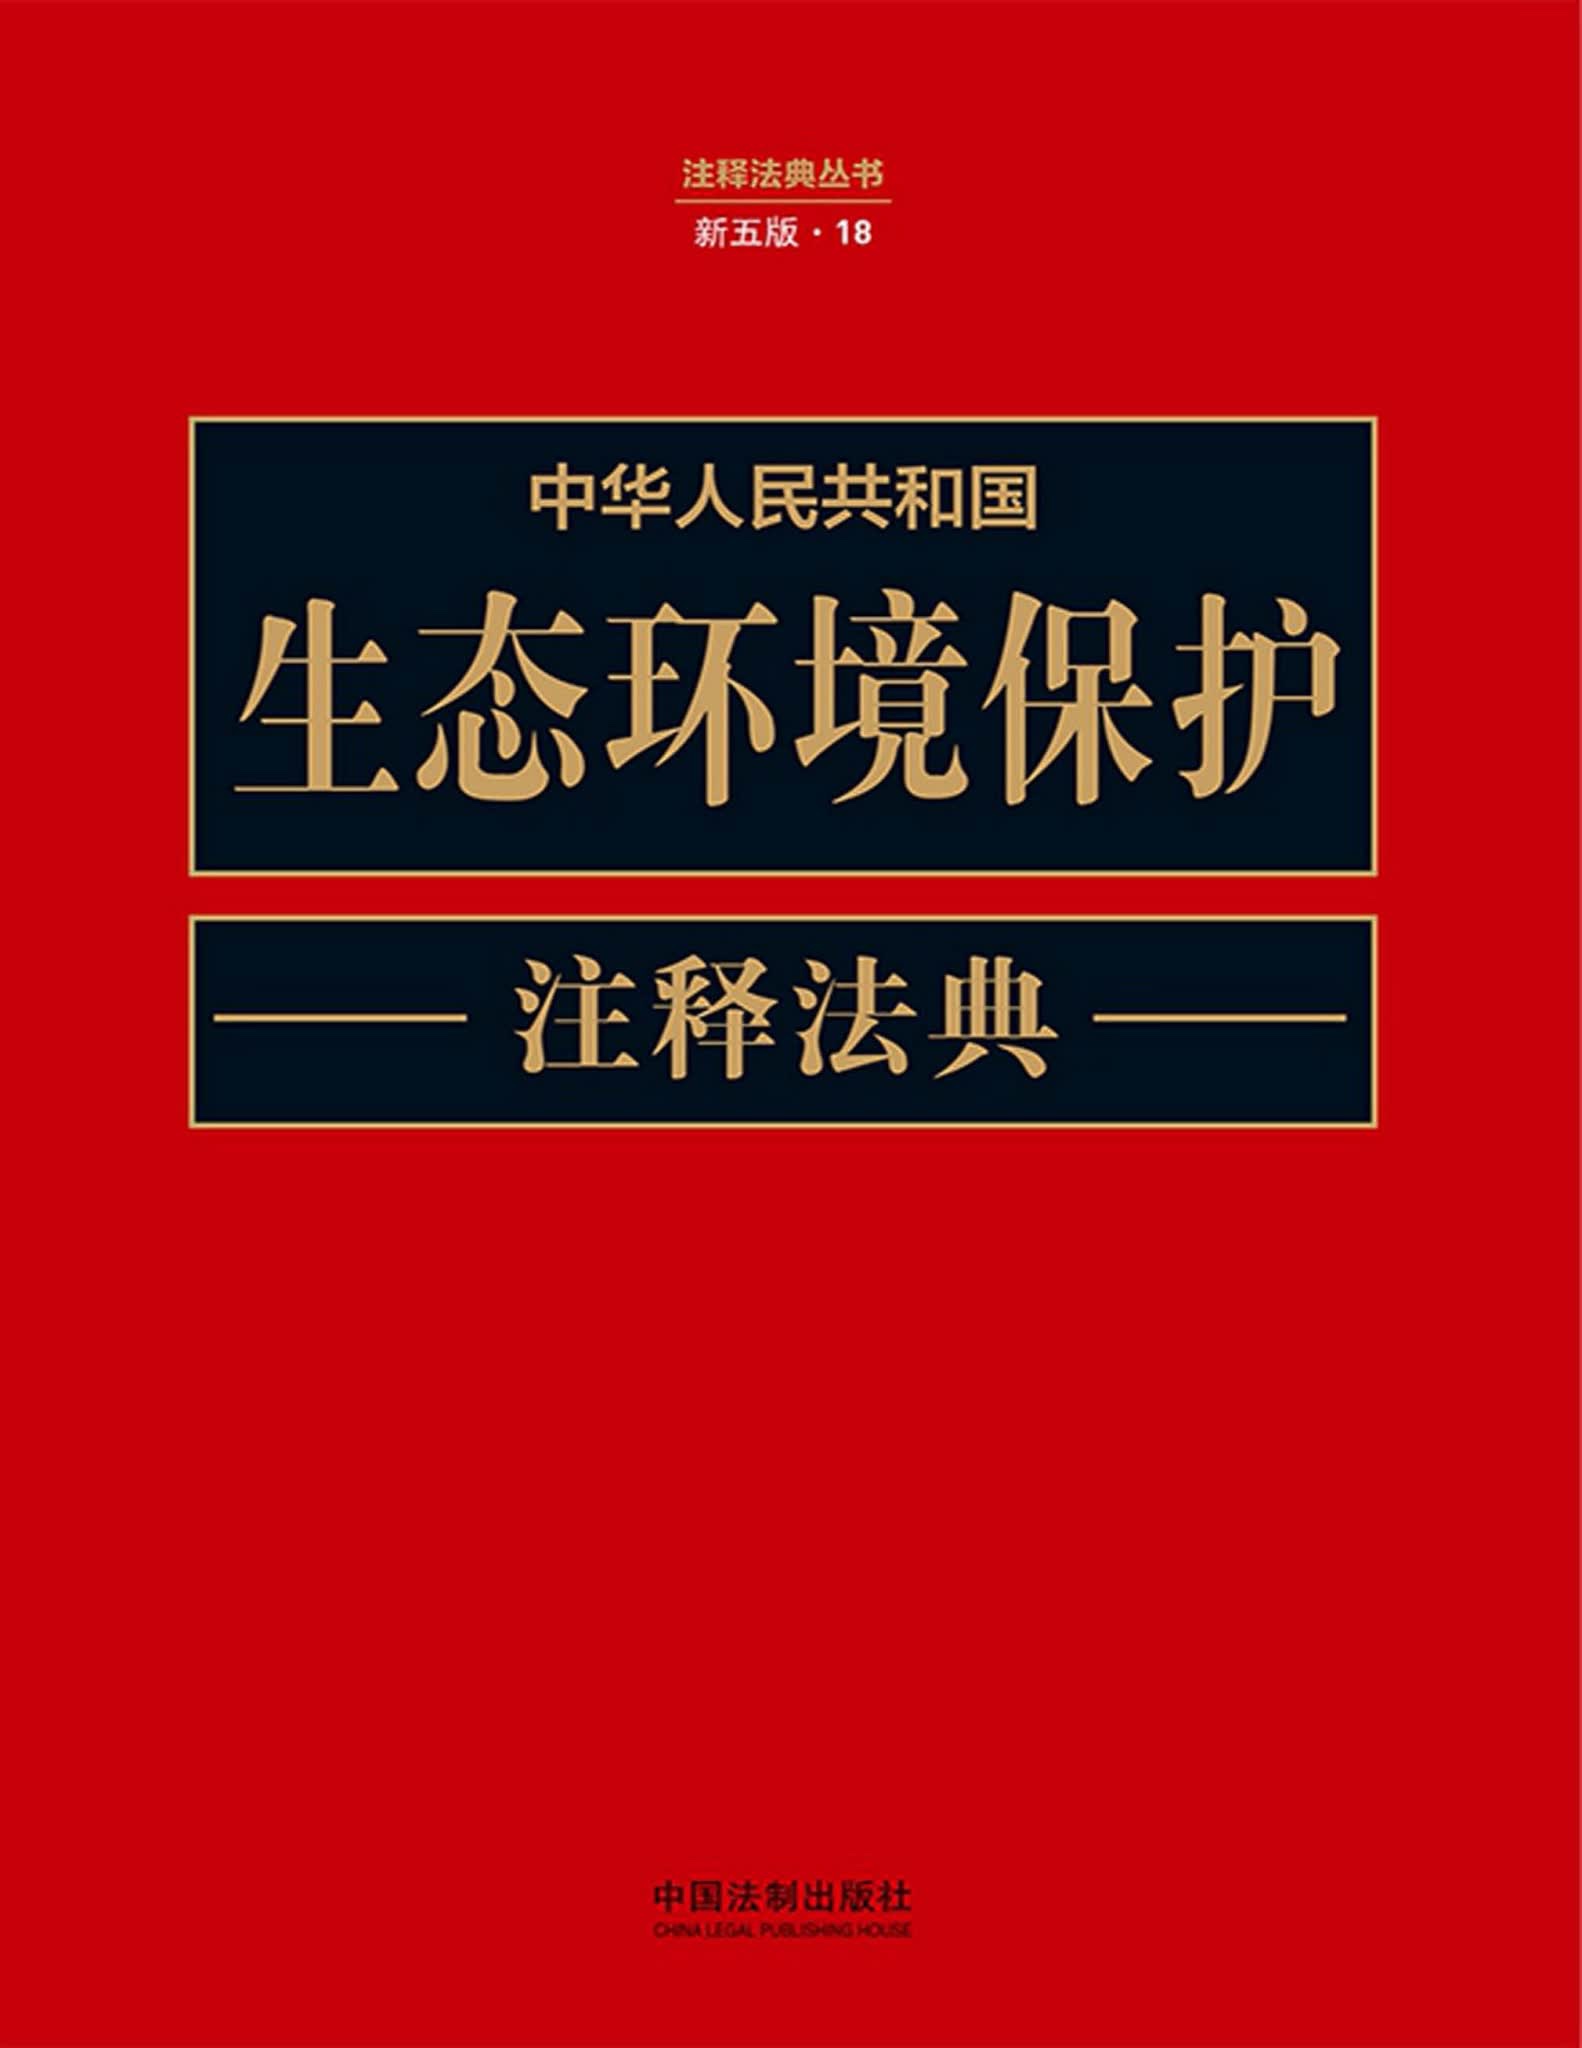 【法律书籍上新】 226中国数据要案（第一辑）姜启波 227中华人民共和国生态环境保护注释法典（新五版）